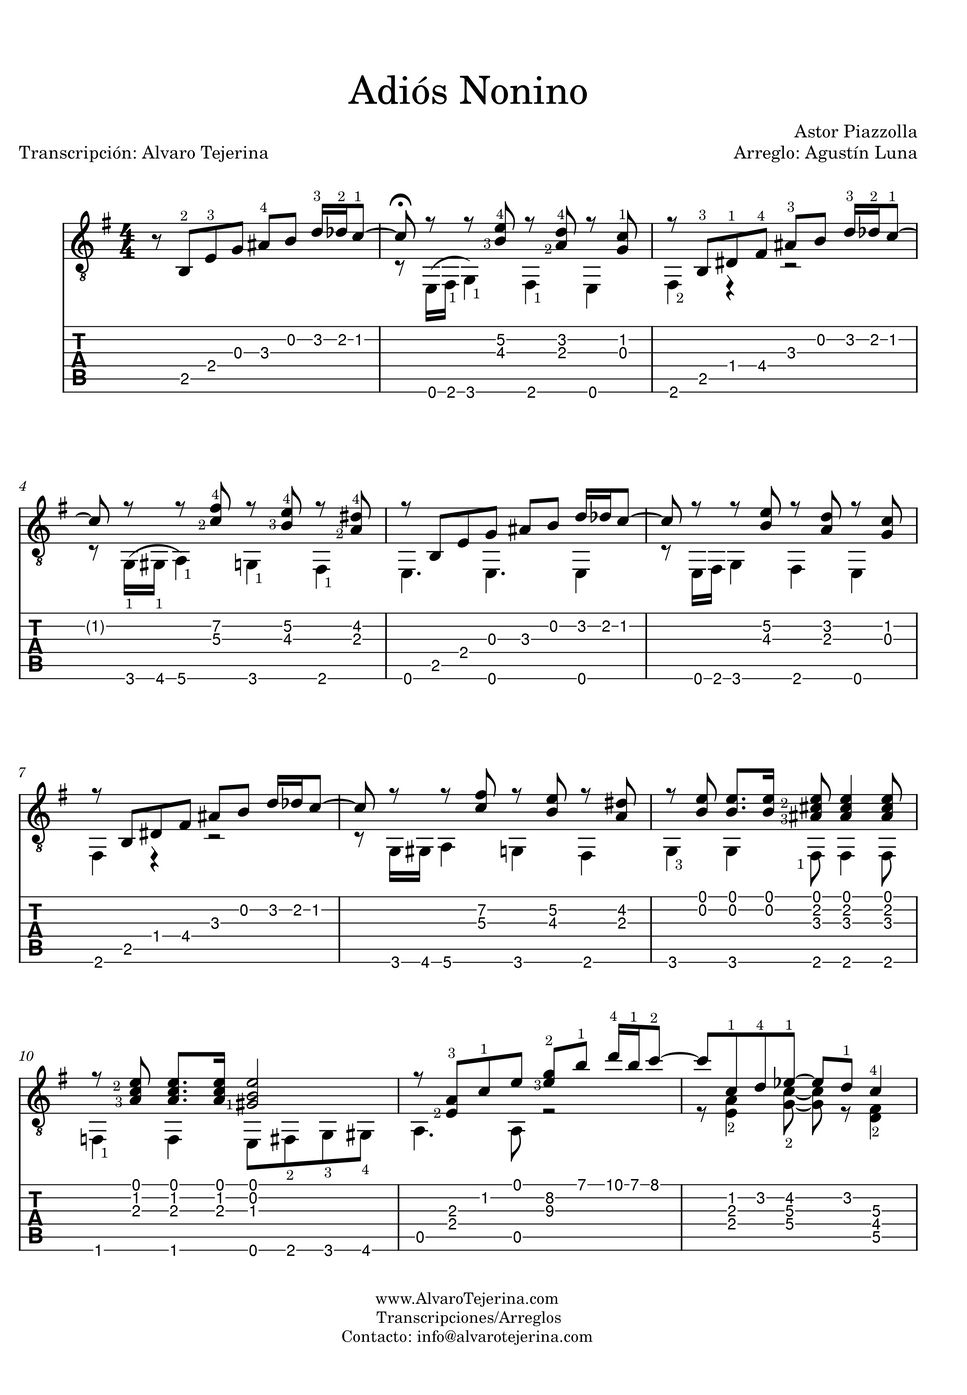 Astor Piazzolla - Adiós Nonino (Transcripción del arreglo para guitarra sola de Agustín Luna) by Agustín Luna